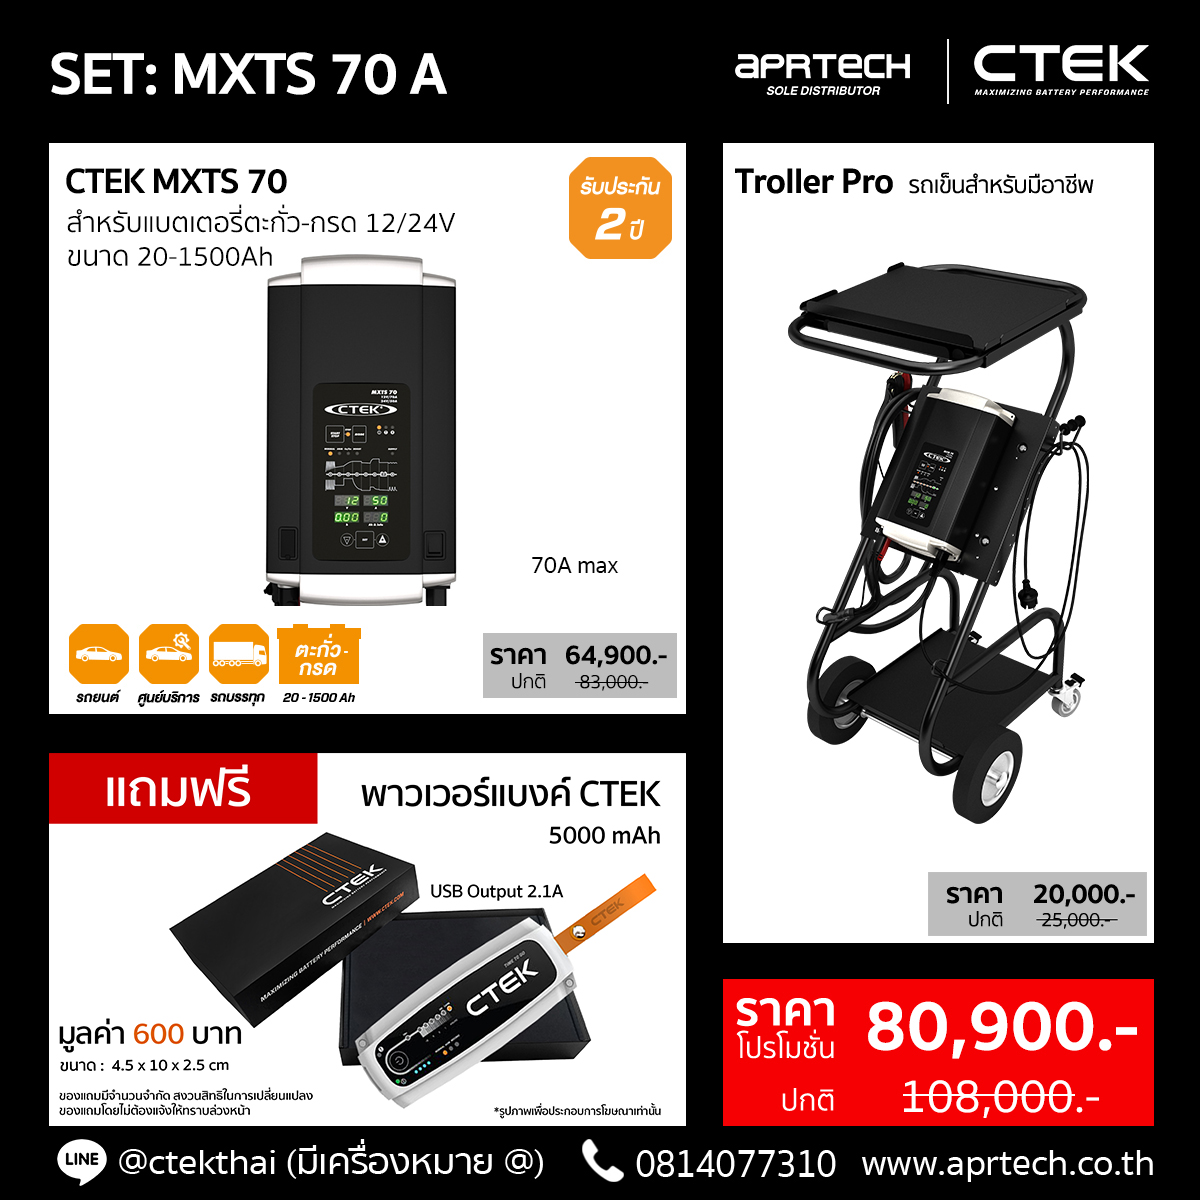 SET MXTS 70 A (CTEK MXTS 70 + Trolley Pro)